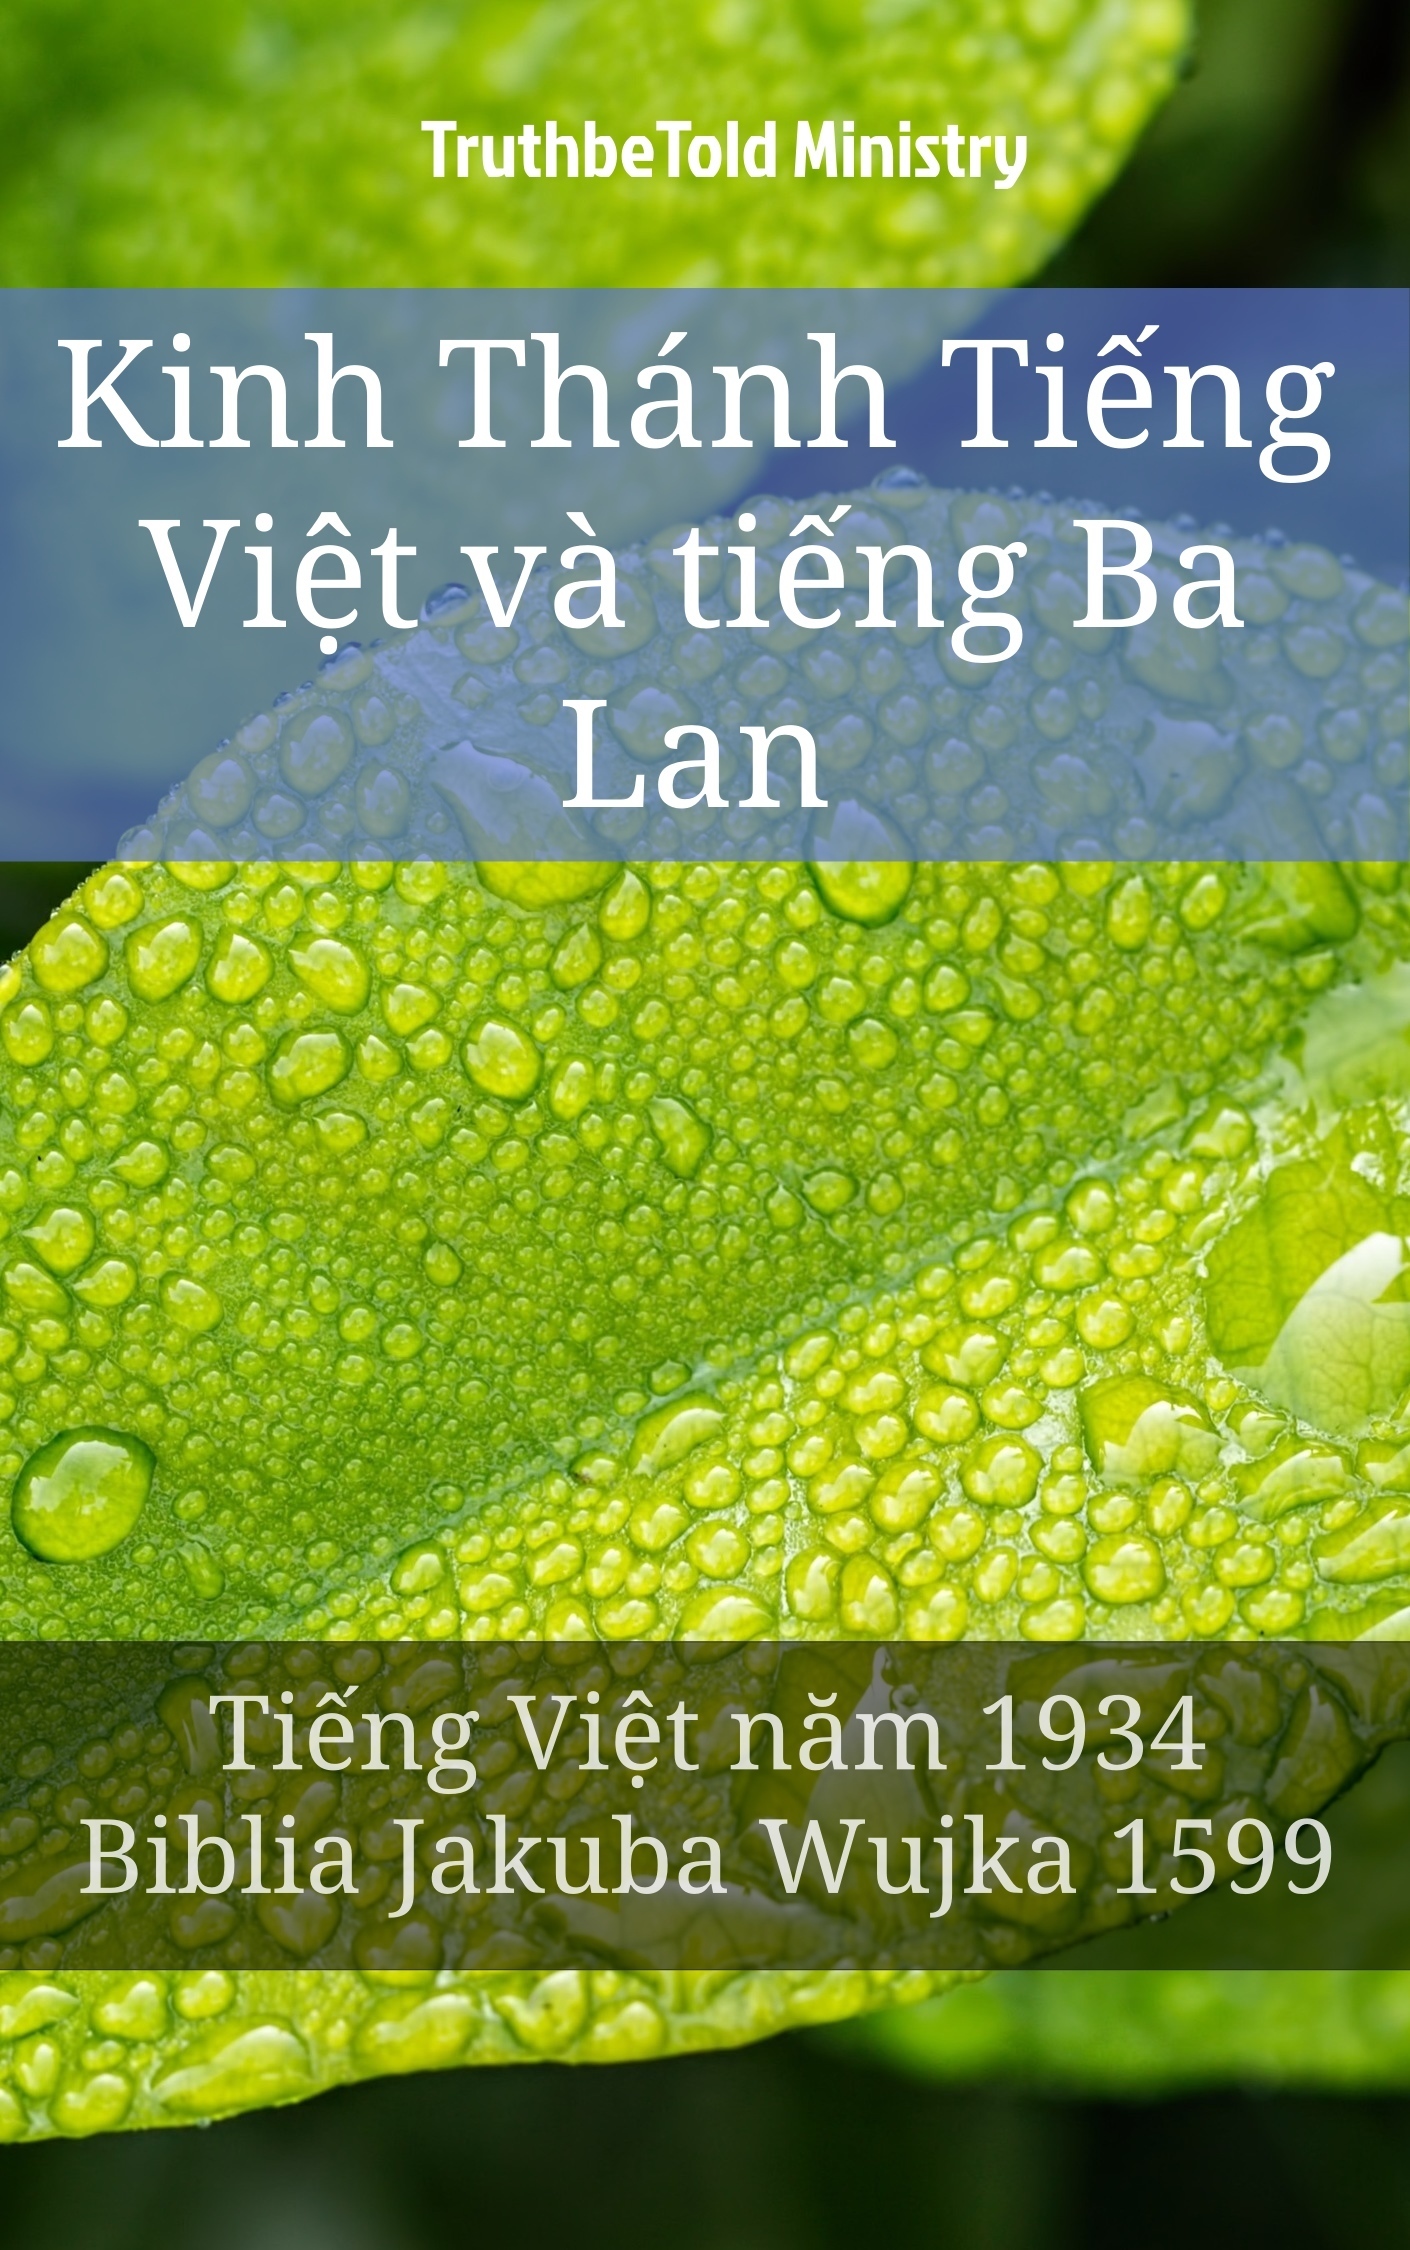 Kinh Thánh Tiếng Việt và tiếng Ba Lan